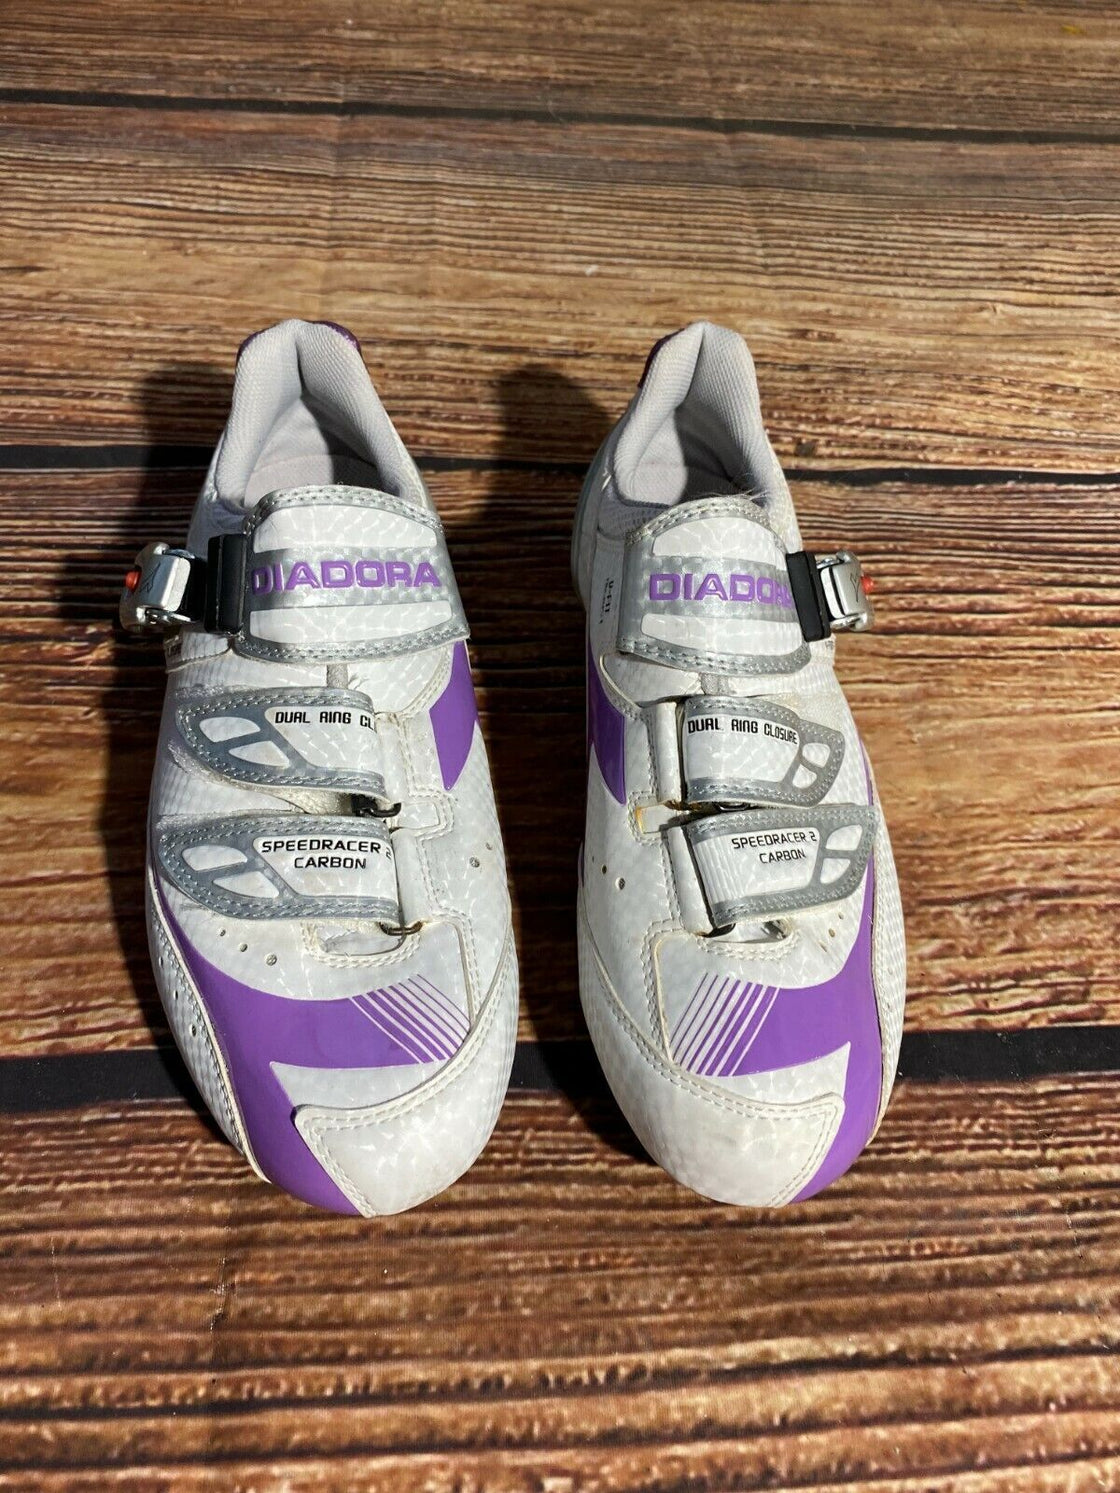 DIADORA Road Cycling Shoes Road Bike Boots 3 Bolts Ladies Size EU40